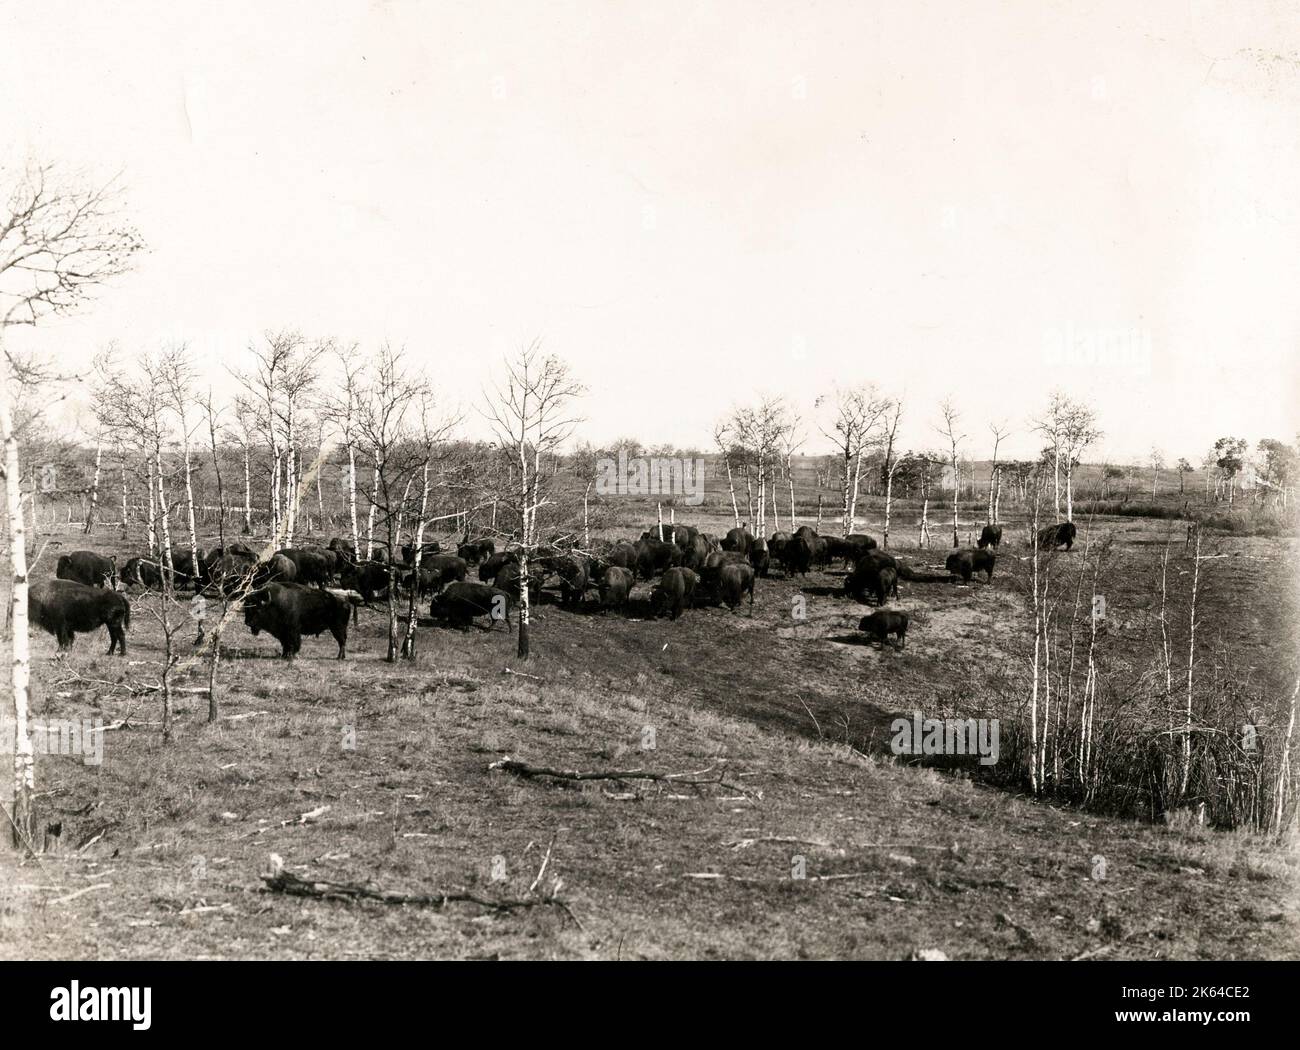 Büffelherde in Buffalo National Park Kanada, c 1920. Buffalo National Park war in der Nähe der Stadt Wainwright in East Central Alberta am 5. Juni 1909 erstellt. Es wurde 1940 geschlossen und 1947 dekotiert, wenn das Land an die Abteilung der nationalen Verteidigung übertragen wurde. Die 583 km2 (225 sq mi) Park Land umfasst nunmehr die Mehrheit der Canadian Forces Base Wainwright. Der erste Park Warden wurde Bud Baumwolle, der von 1912 bis 1940 gedient. Stockfoto